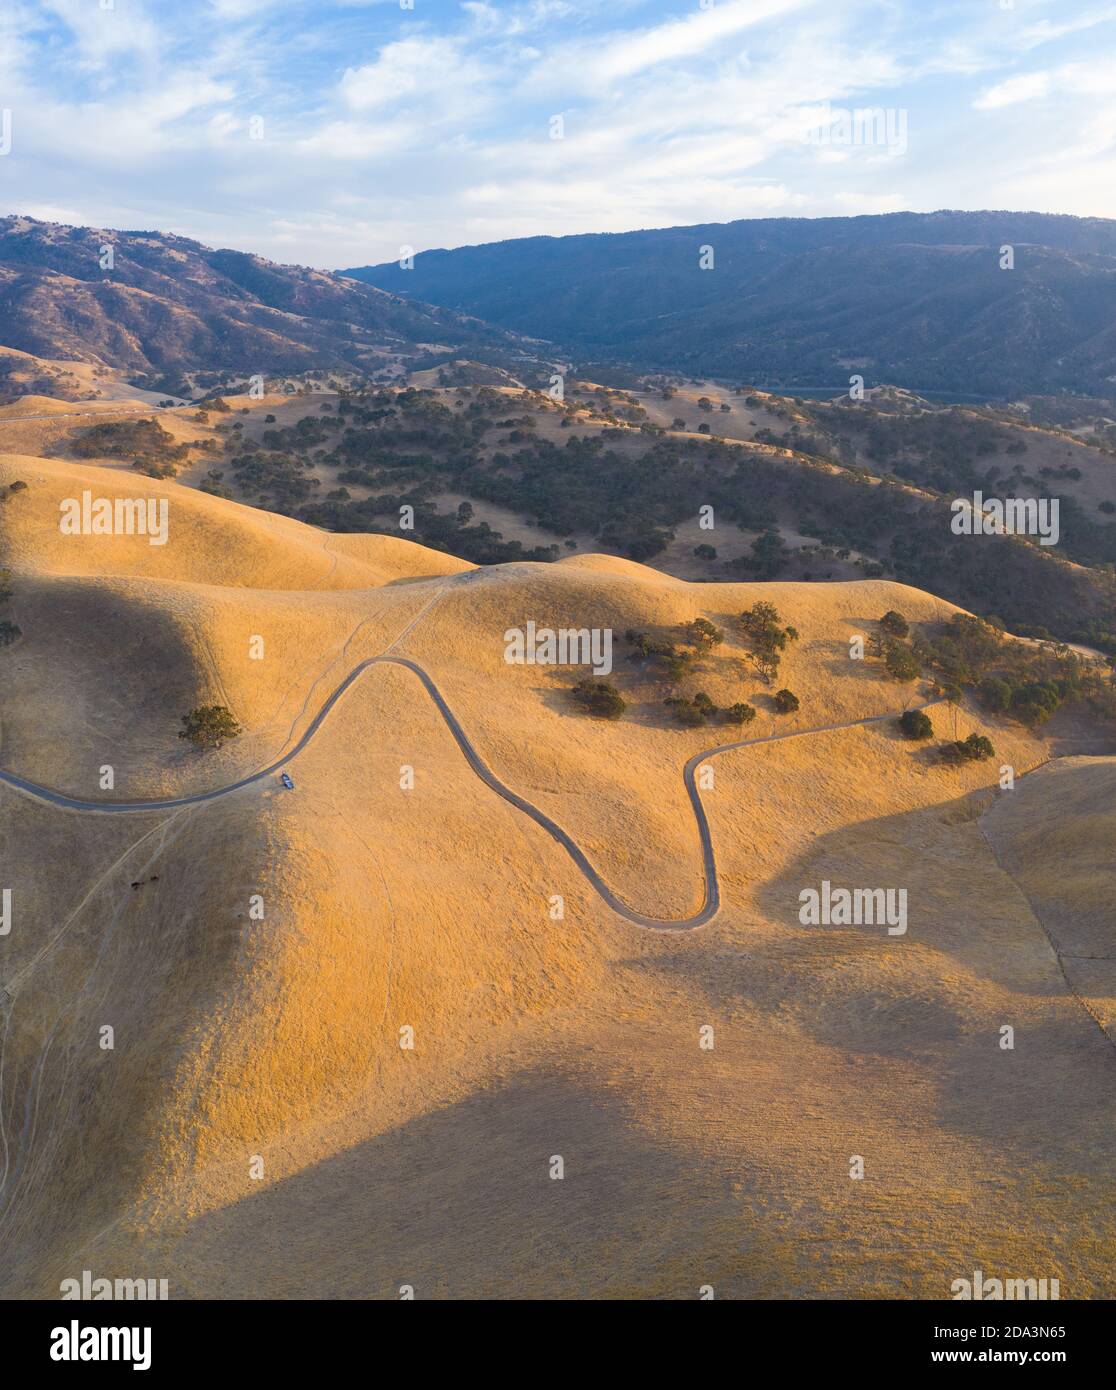 La luce del sole dorata splende sulle colline ondulate della California del Nord. Queste belle colline erose diventano verdi una volta che l'inverno porta pioggia stagionale. Foto Stock